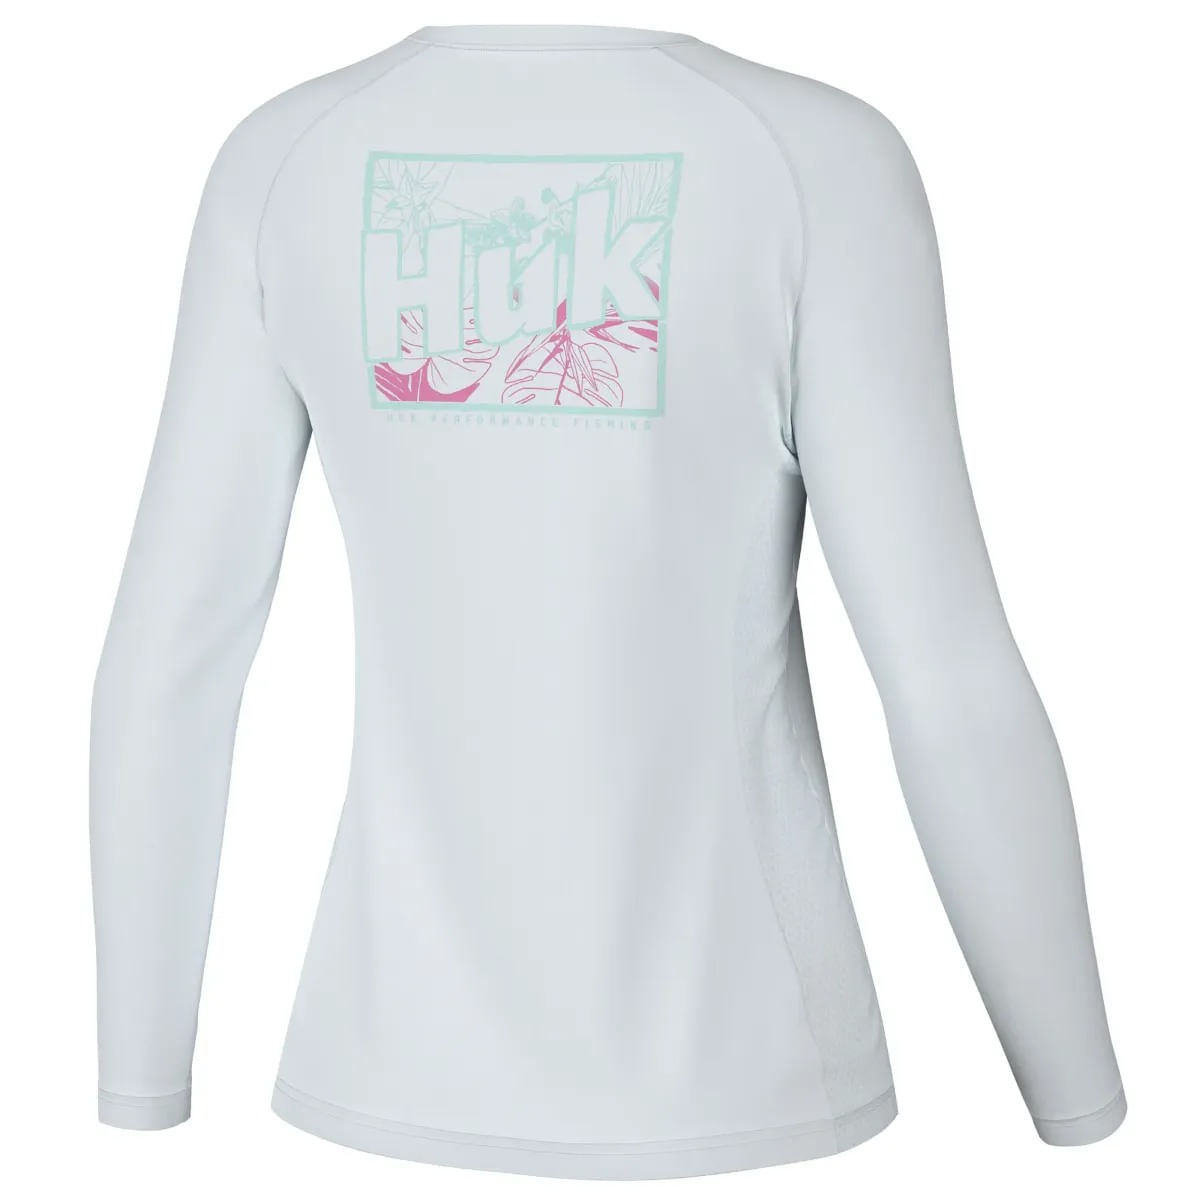 Huk Women's Brackish Pursuit Shirt, Small, Wedgewood